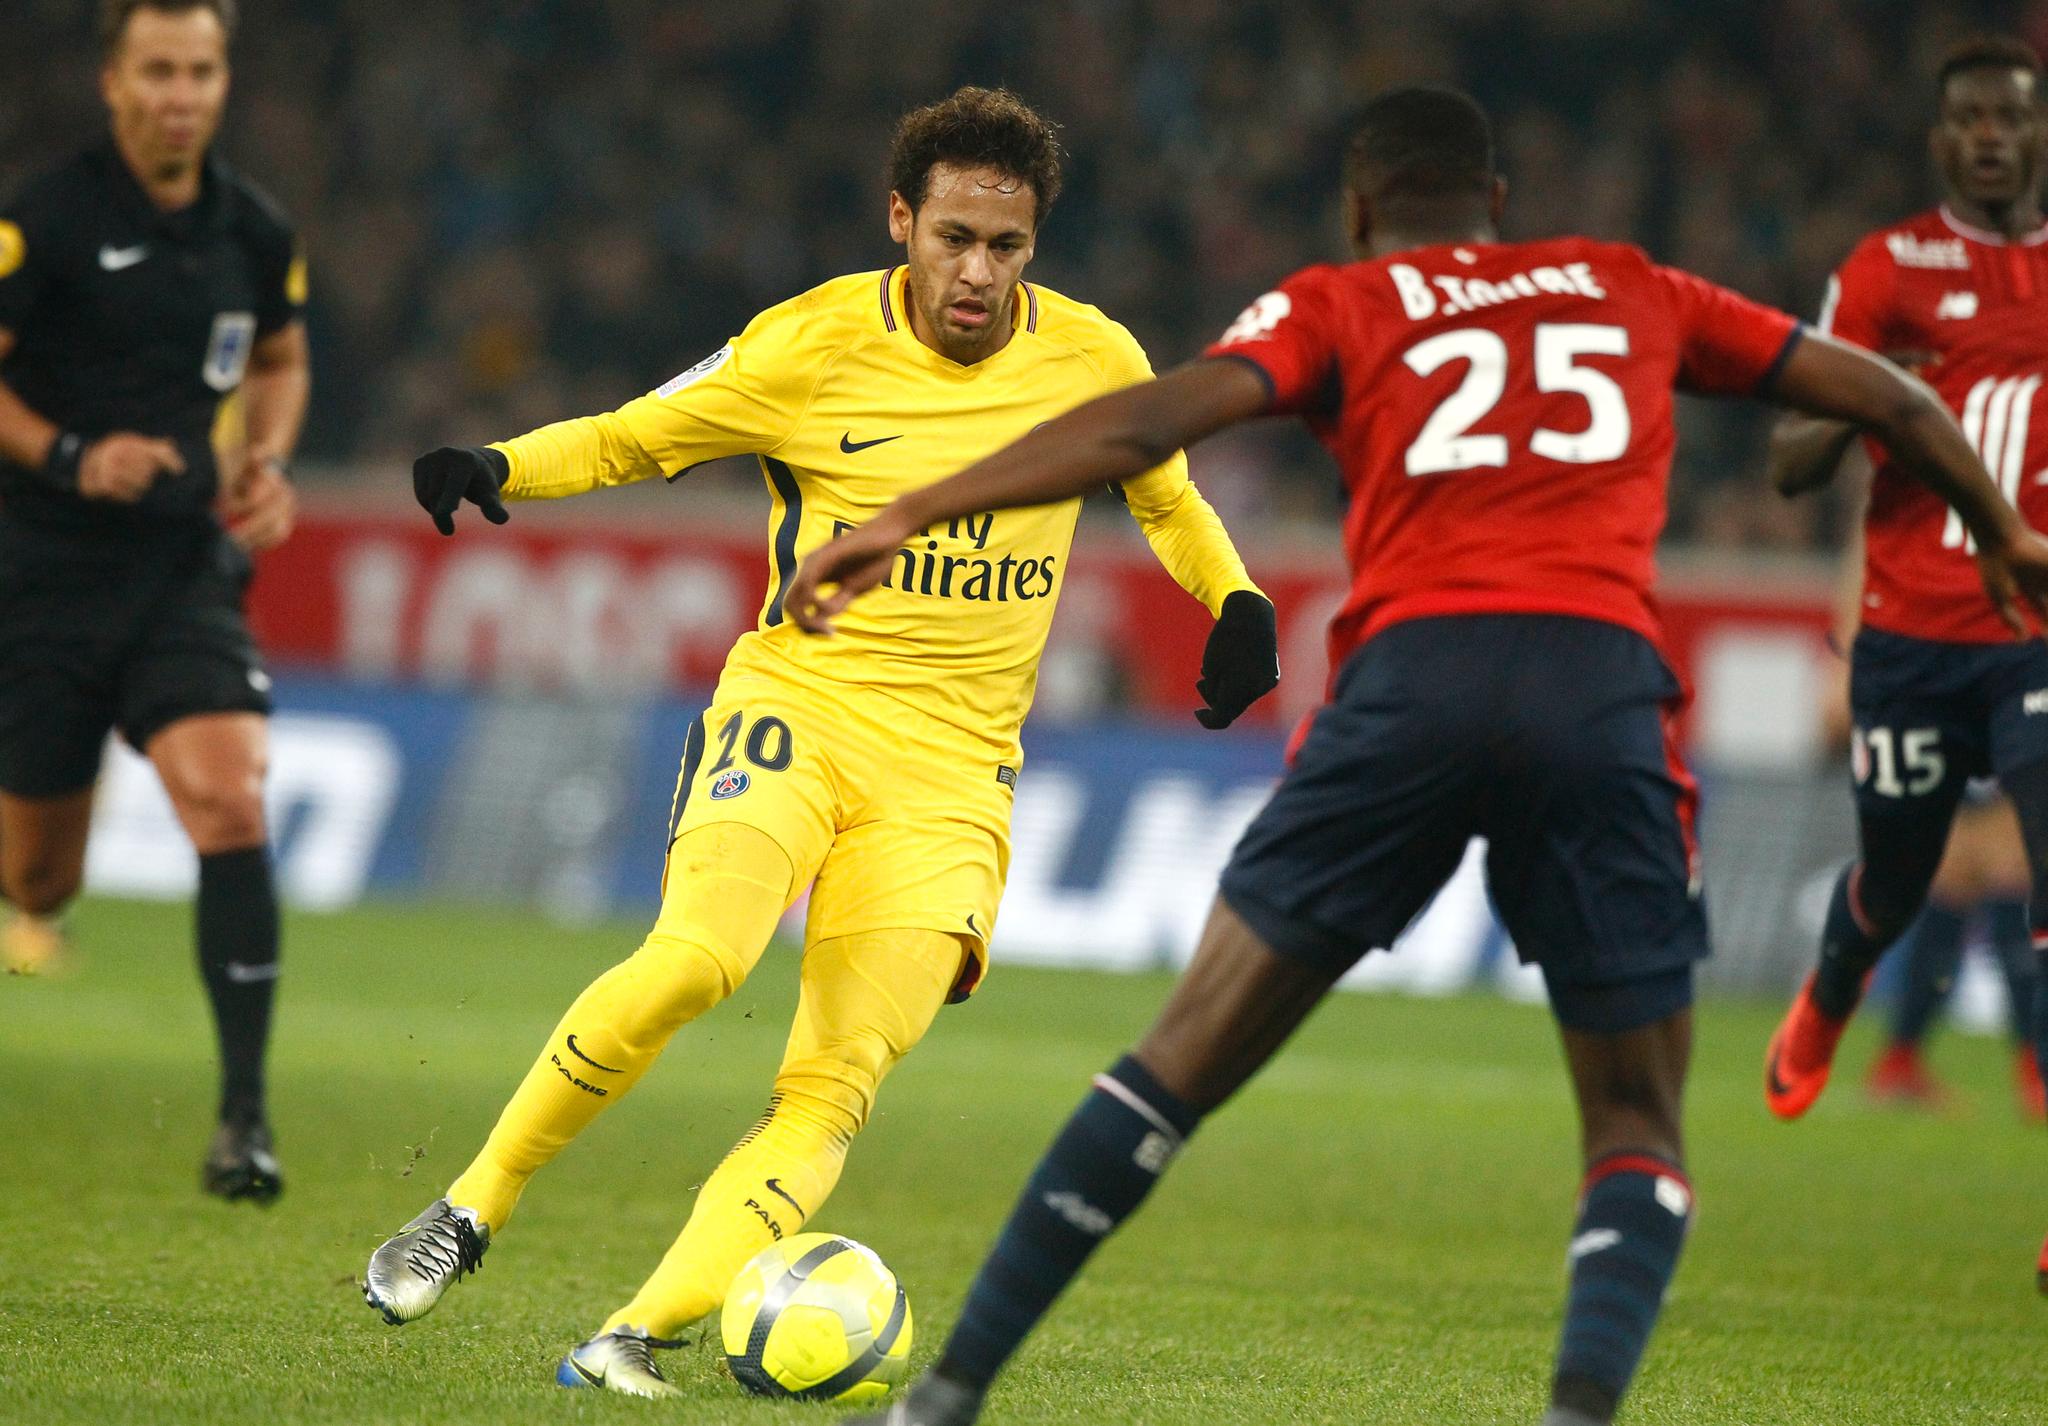 Den brasilianske stjernespilleren Neymar jr. ble kjøpt av PSG for 222 millioner euro i strid med reguleringene om «financial fair play».